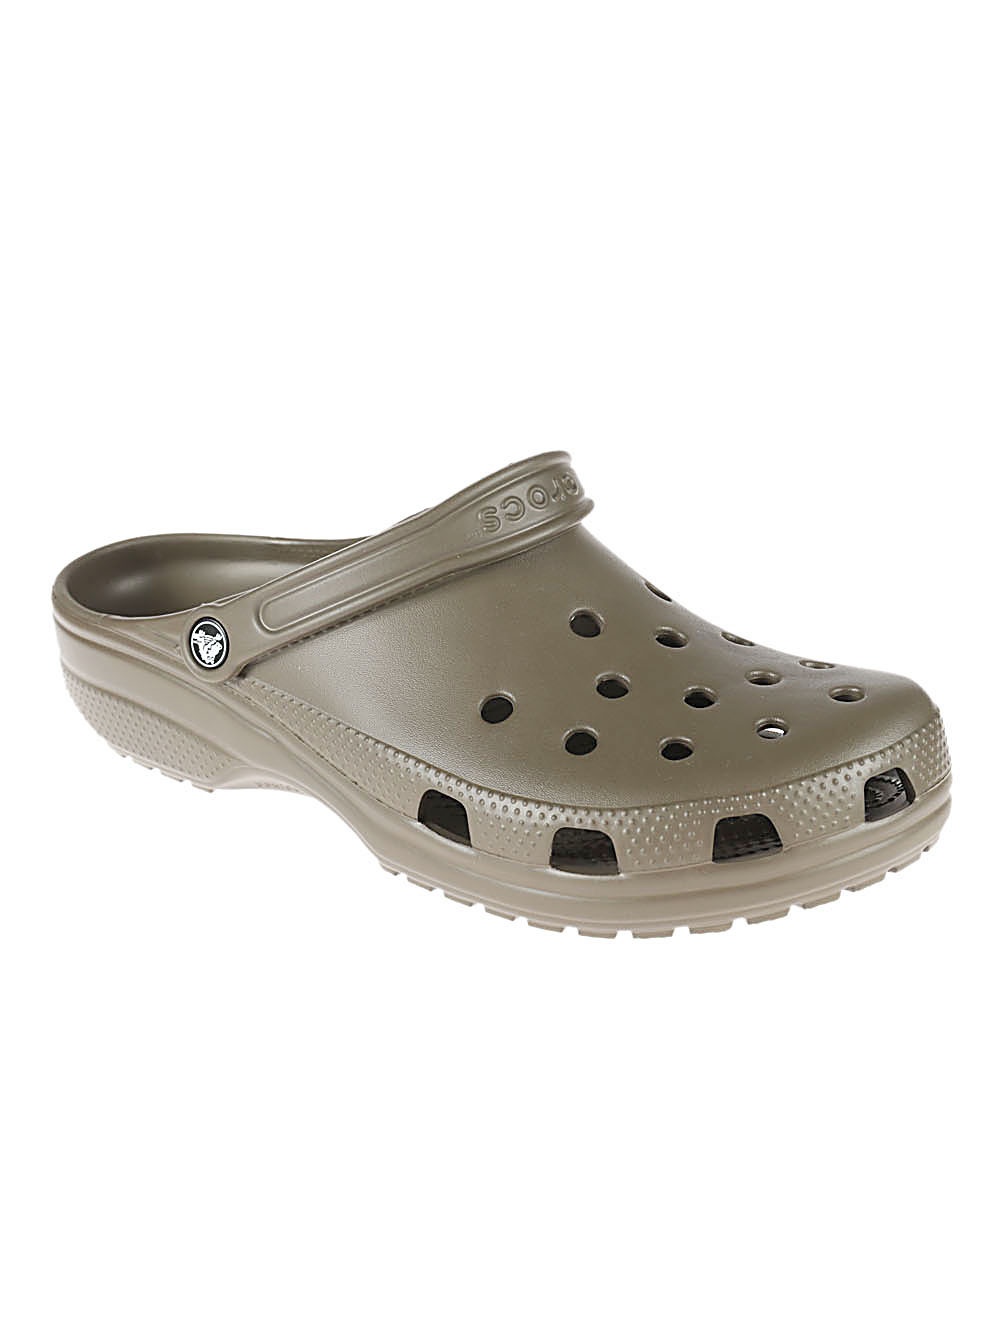 CROCS - Classic Sandals Crocs